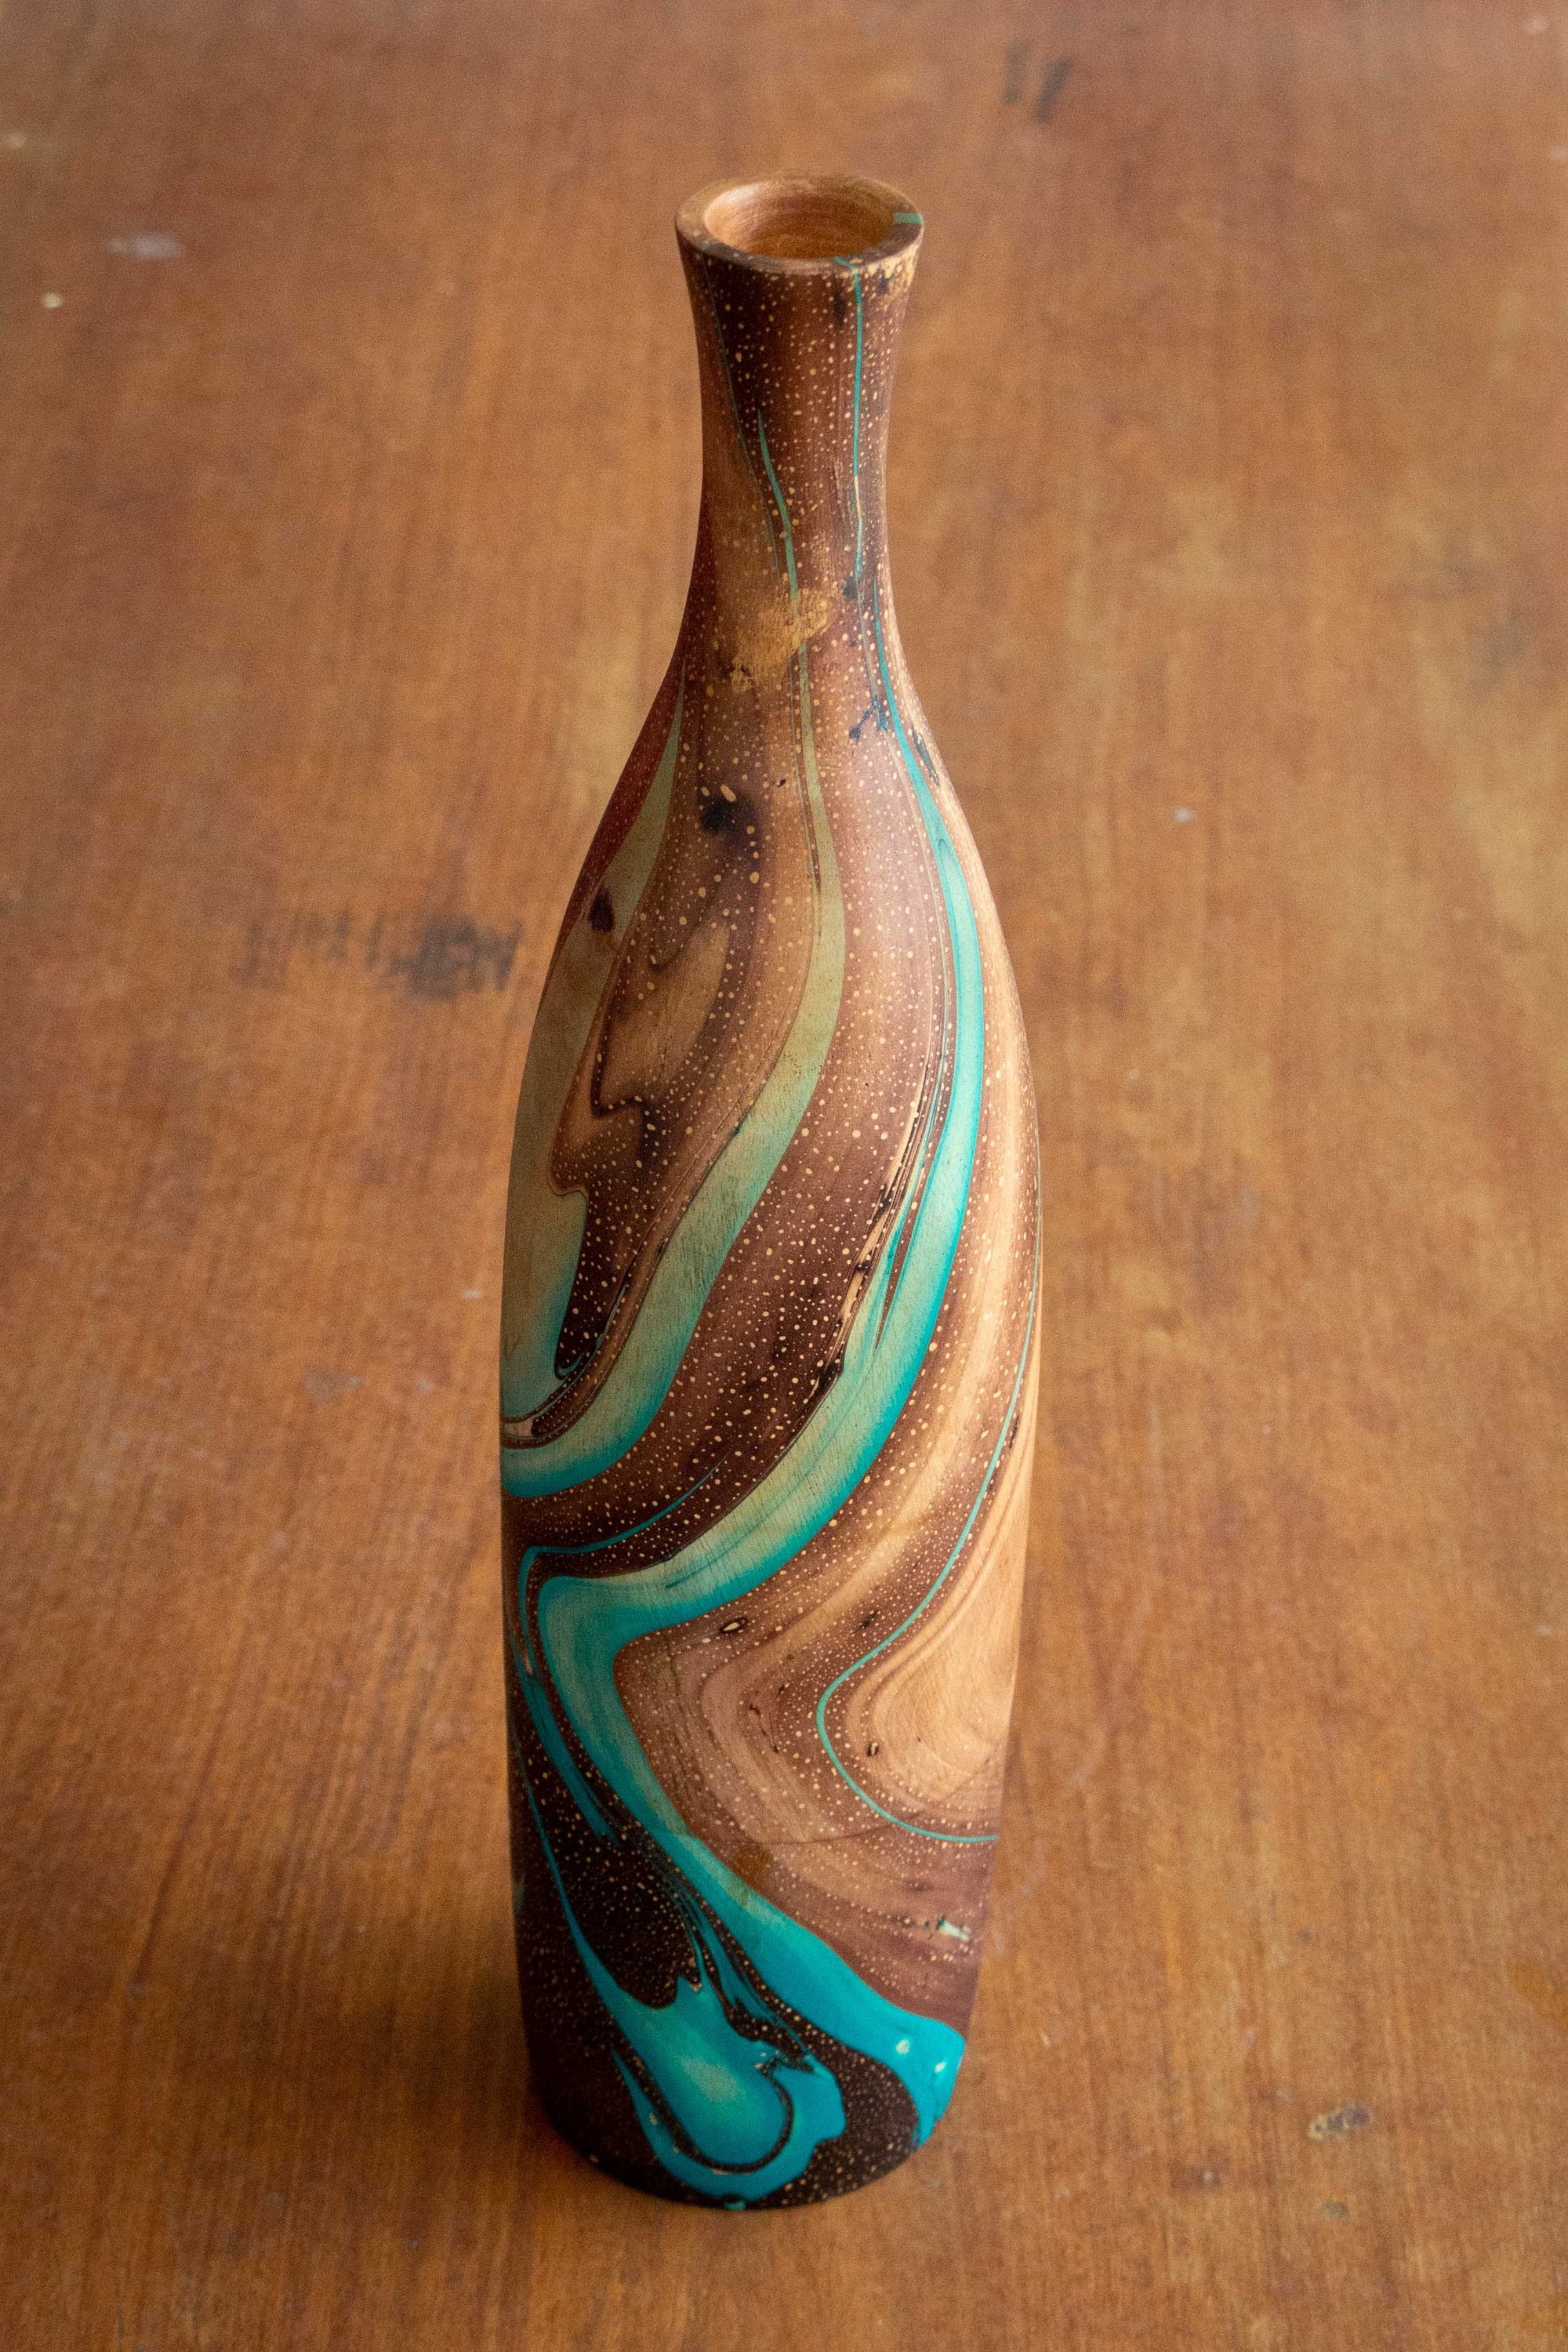 Mango Wood Funnel Vase - 14" (Turquoise)